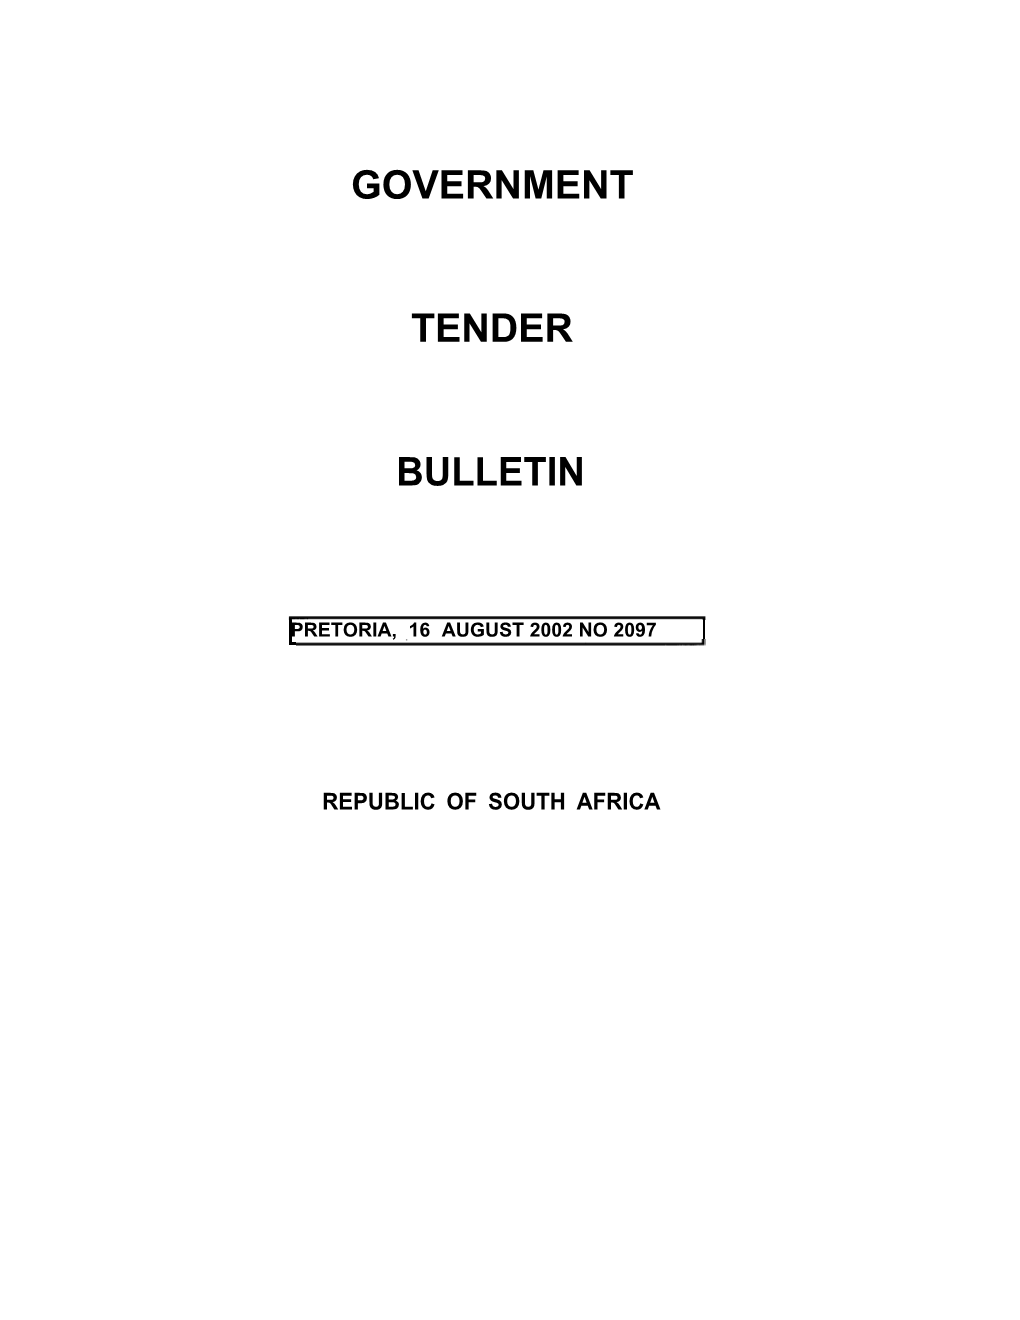 Tender Bulletin Bo.2097